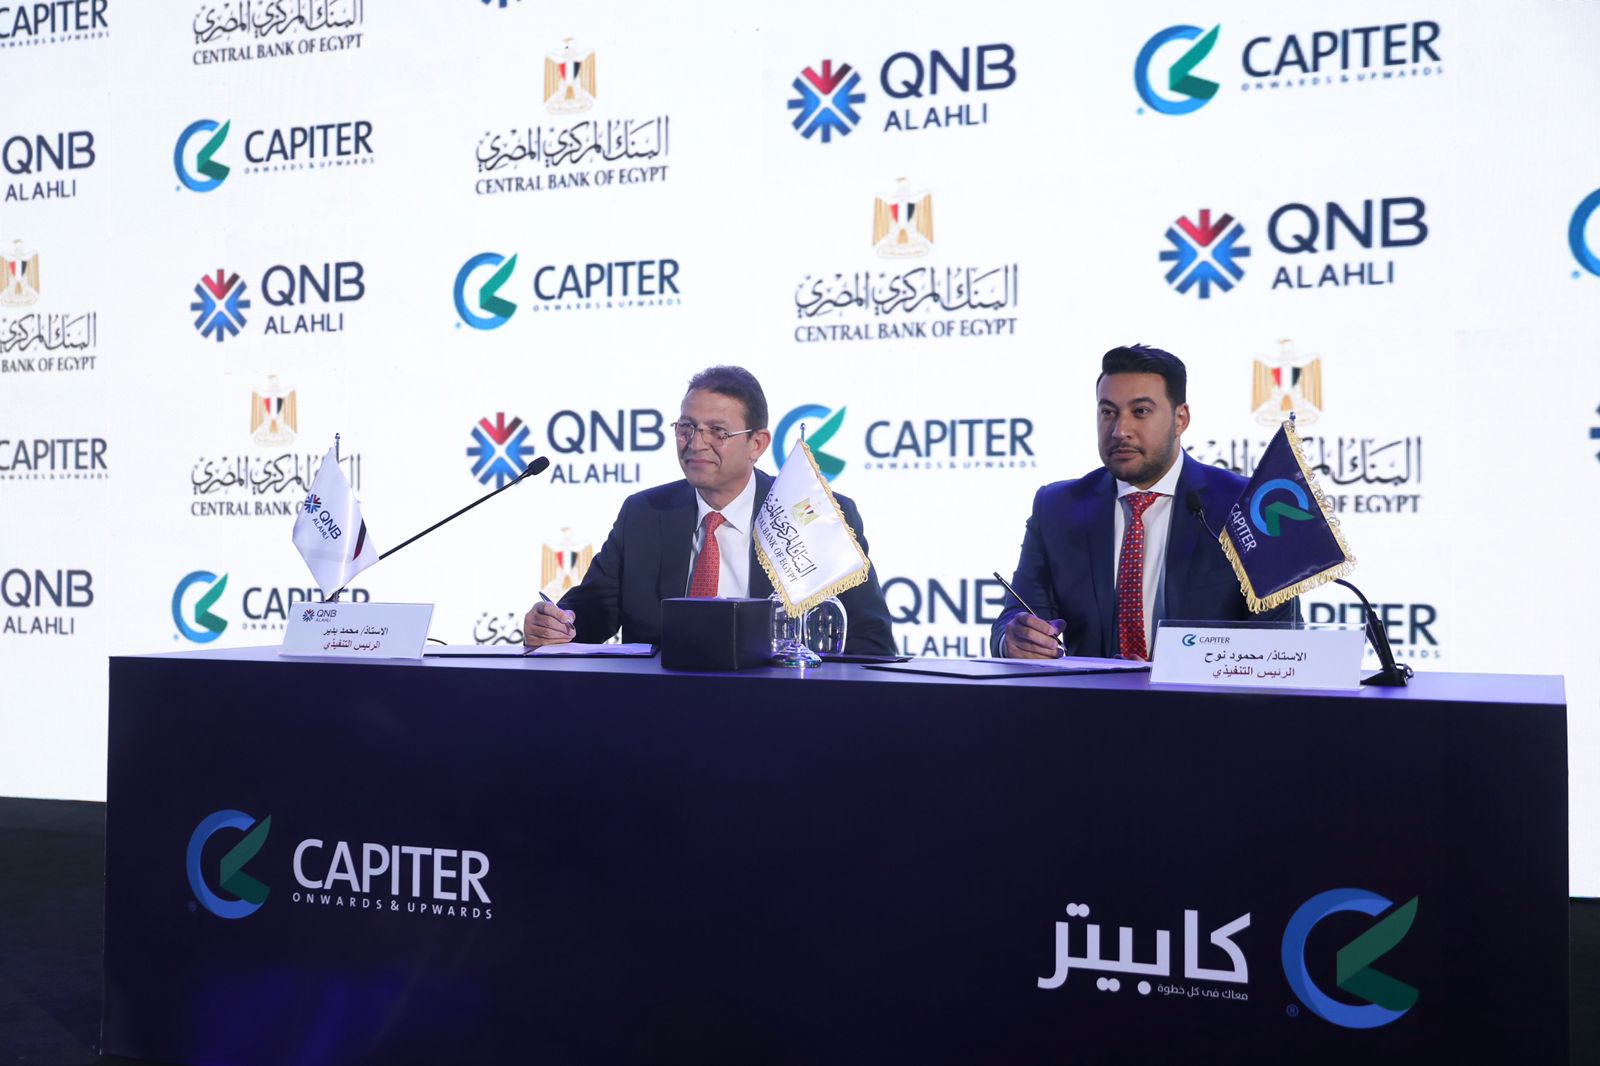 كابيتر توقع شراكة مع QNB الأهلي (1)